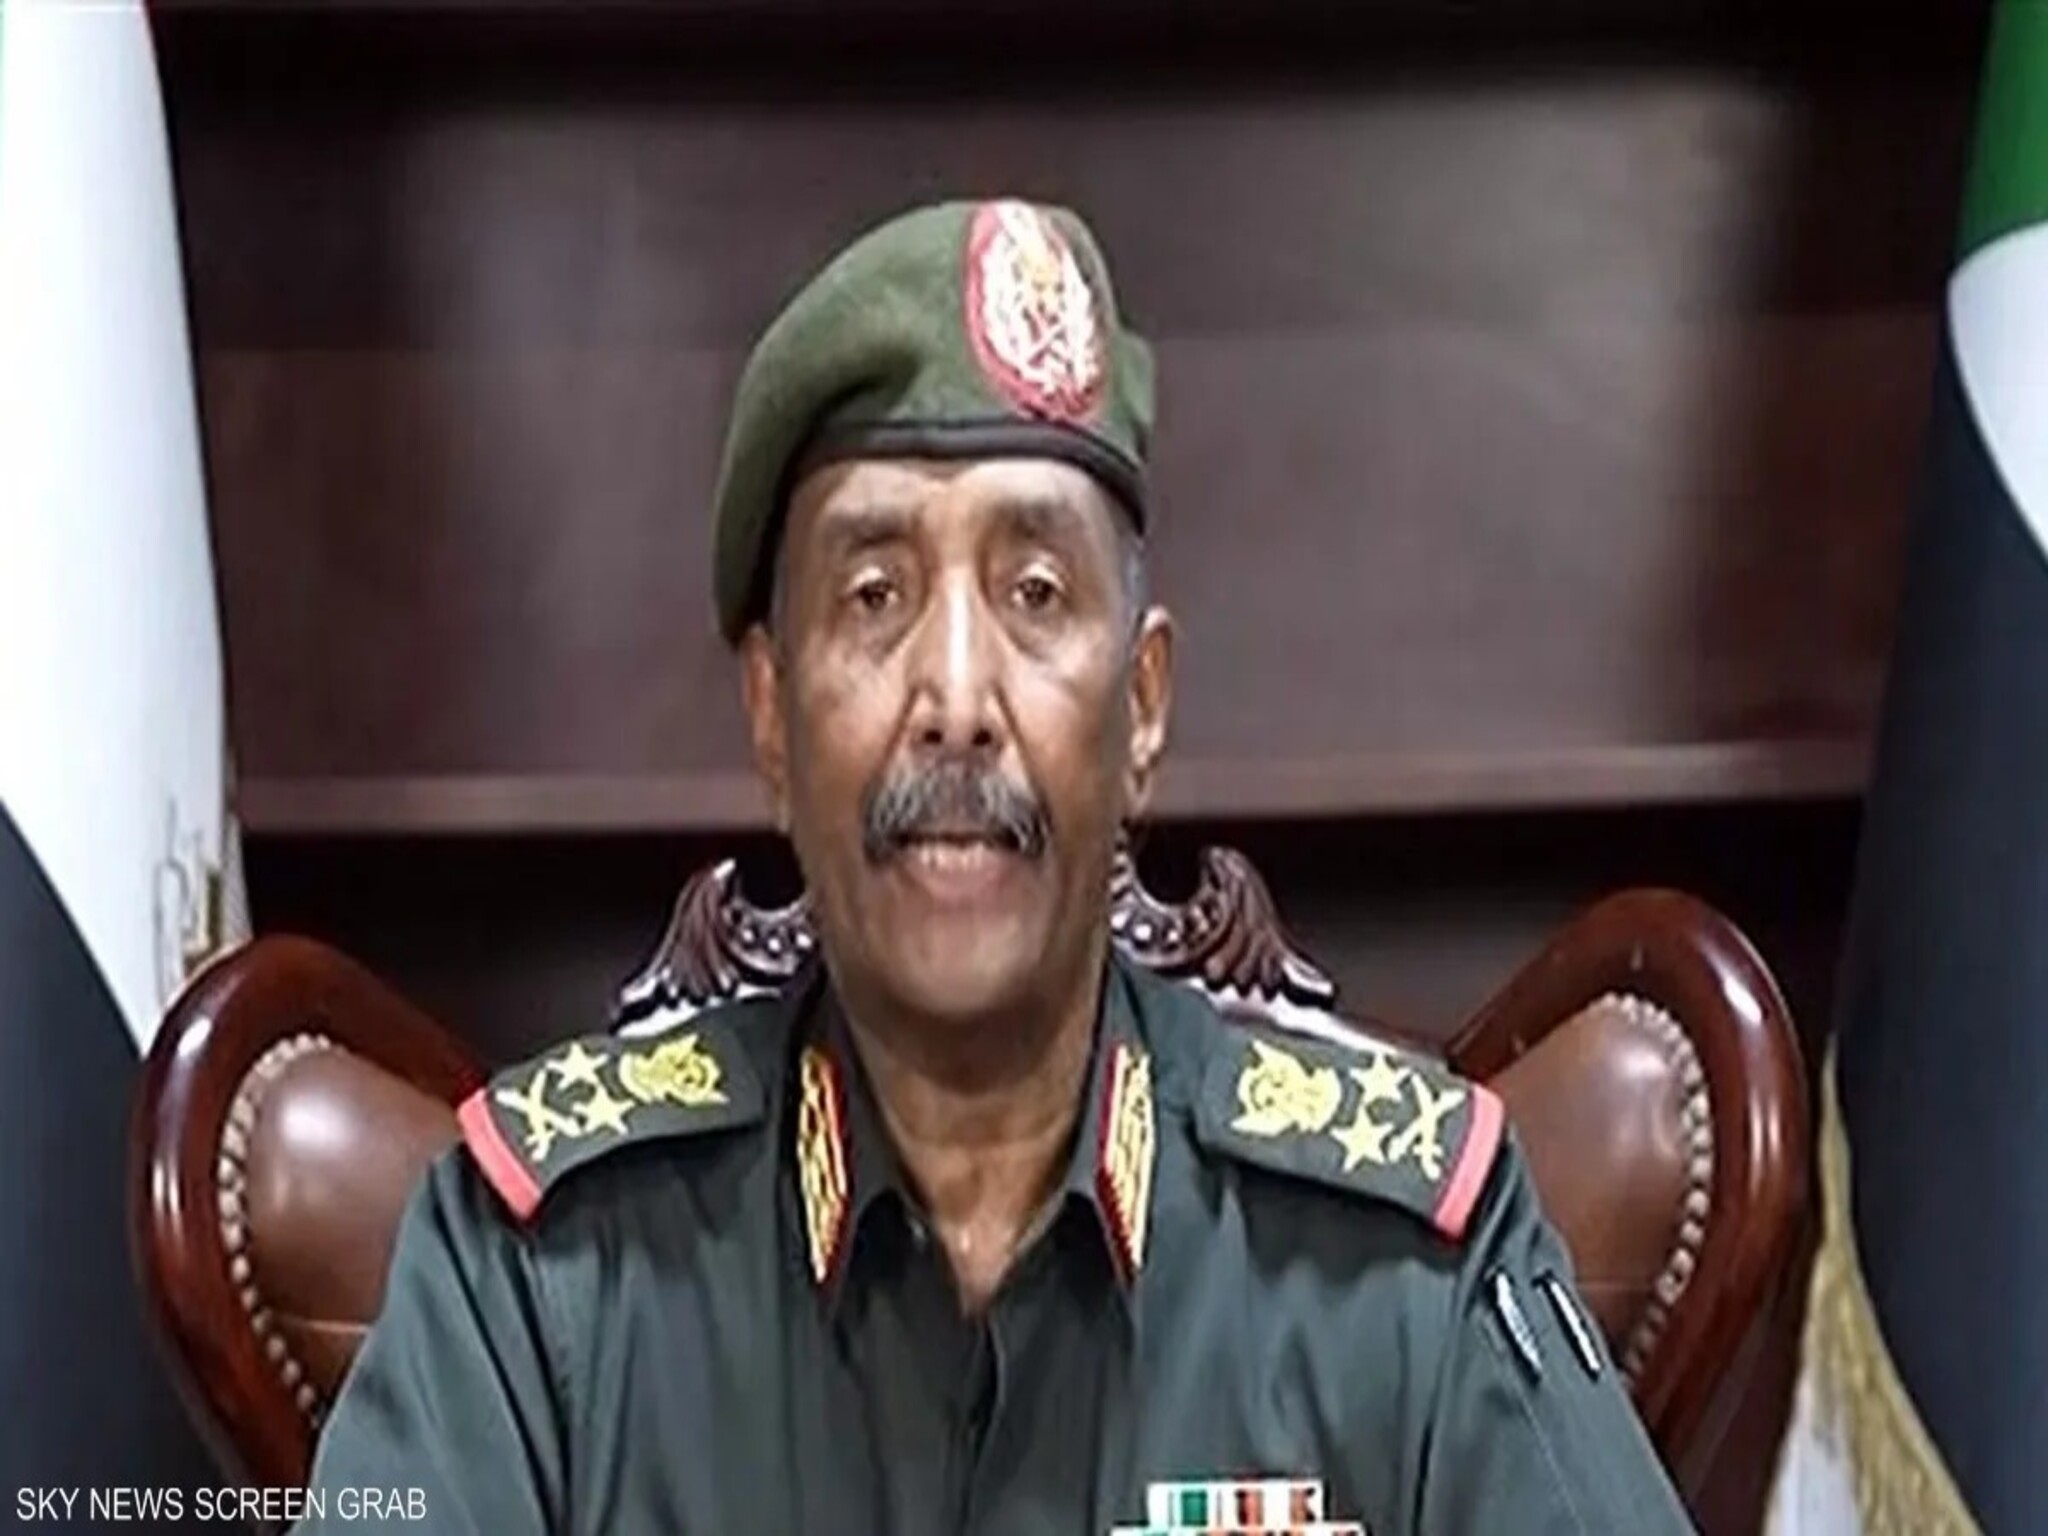 البرهان | القوات المسلحة السودانية سوف تظل متماسكة وقوية وصمام أمان السودان